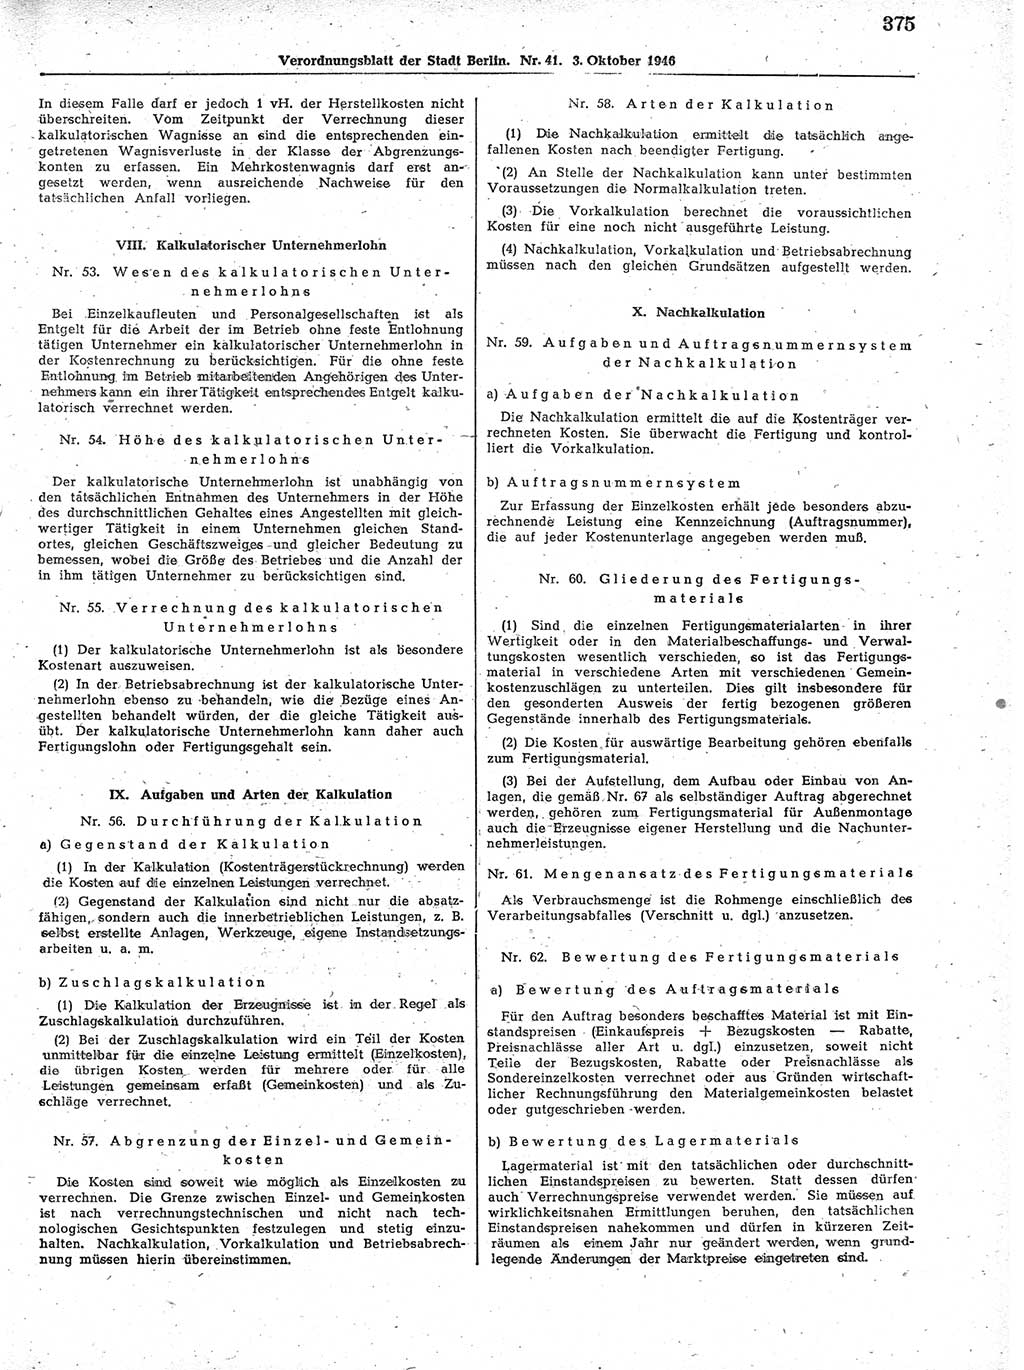 Verordnungsblatt (VOBl.) der Stadt Berlin, für Groß-Berlin 1946, Seite 375 (VOBl. Bln. 1946, S. 375)